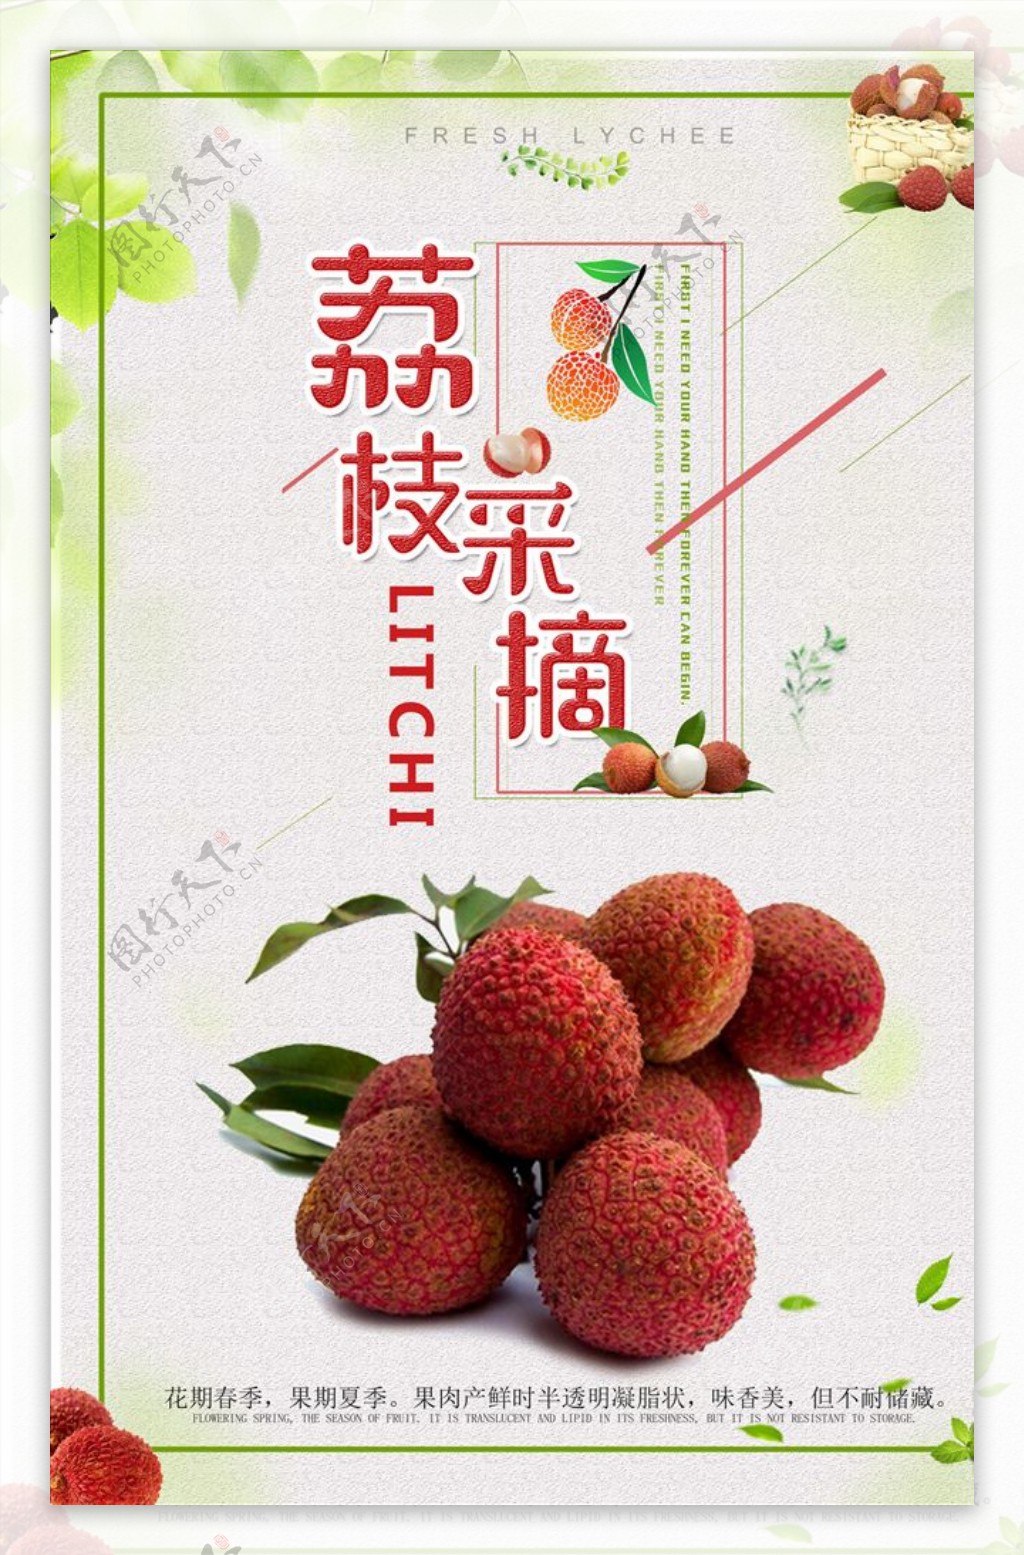 简洁美食荔枝水果促销活动海报